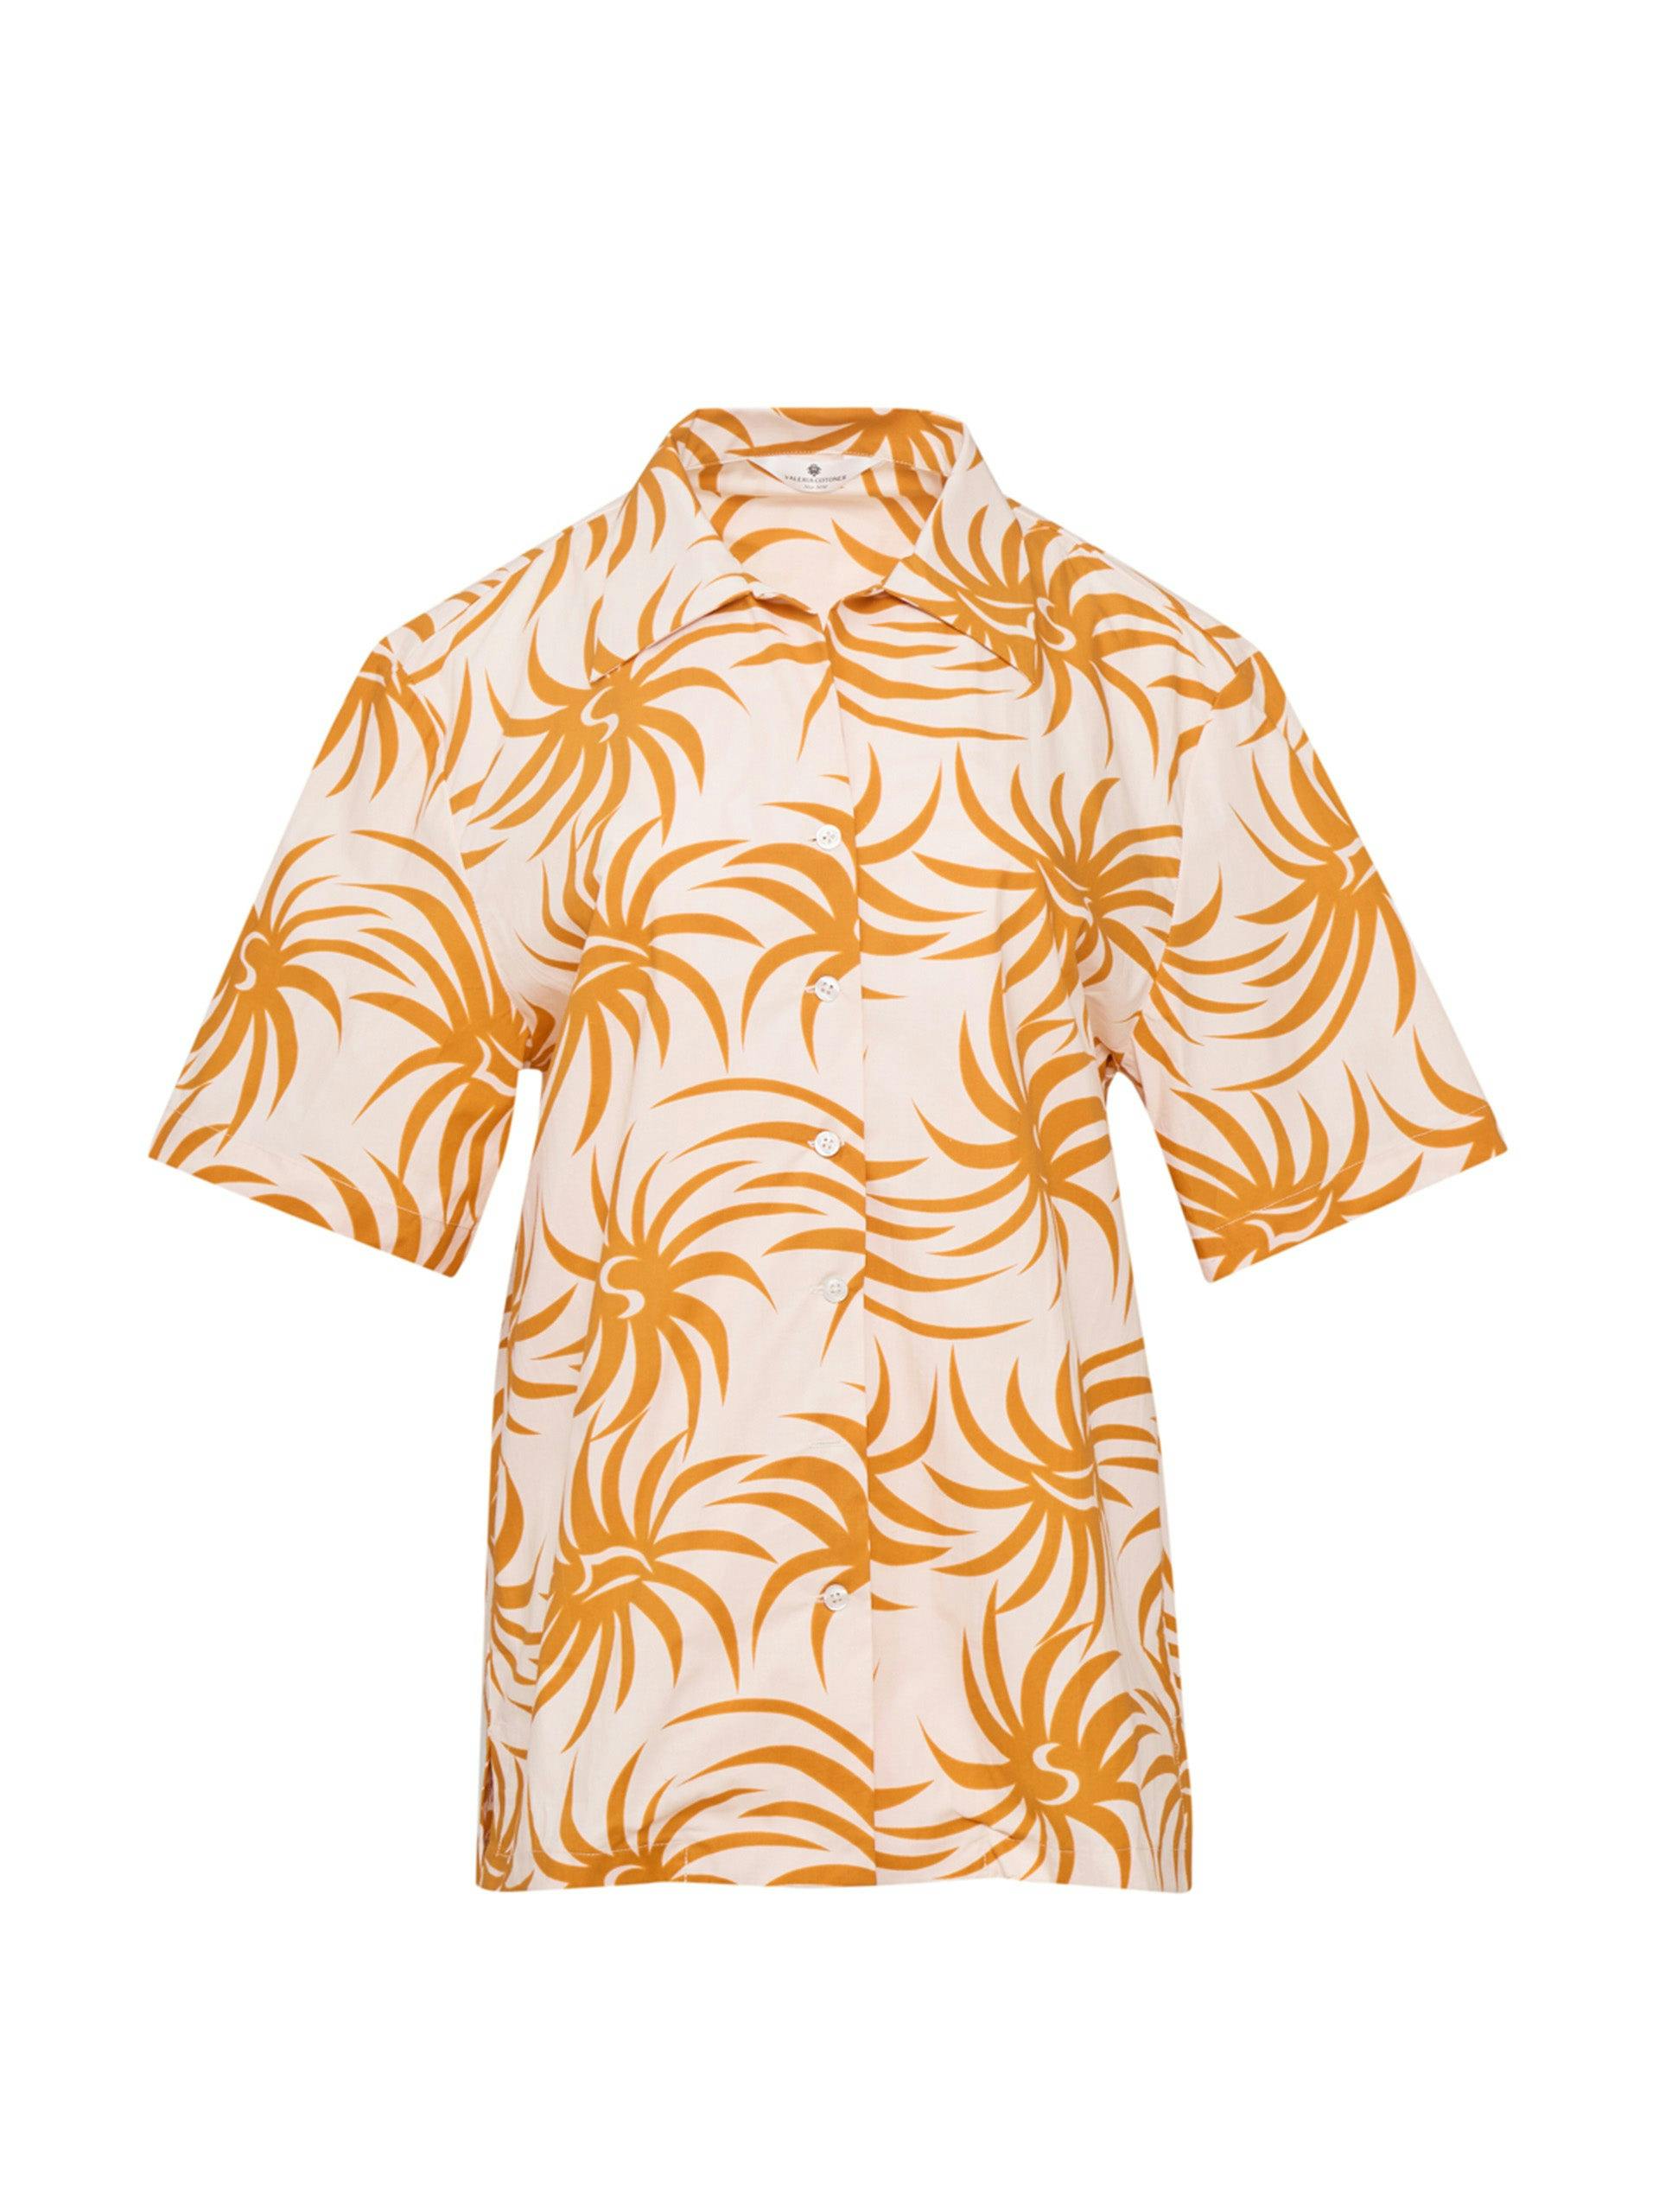 Orange spiral cotton poplin shirt